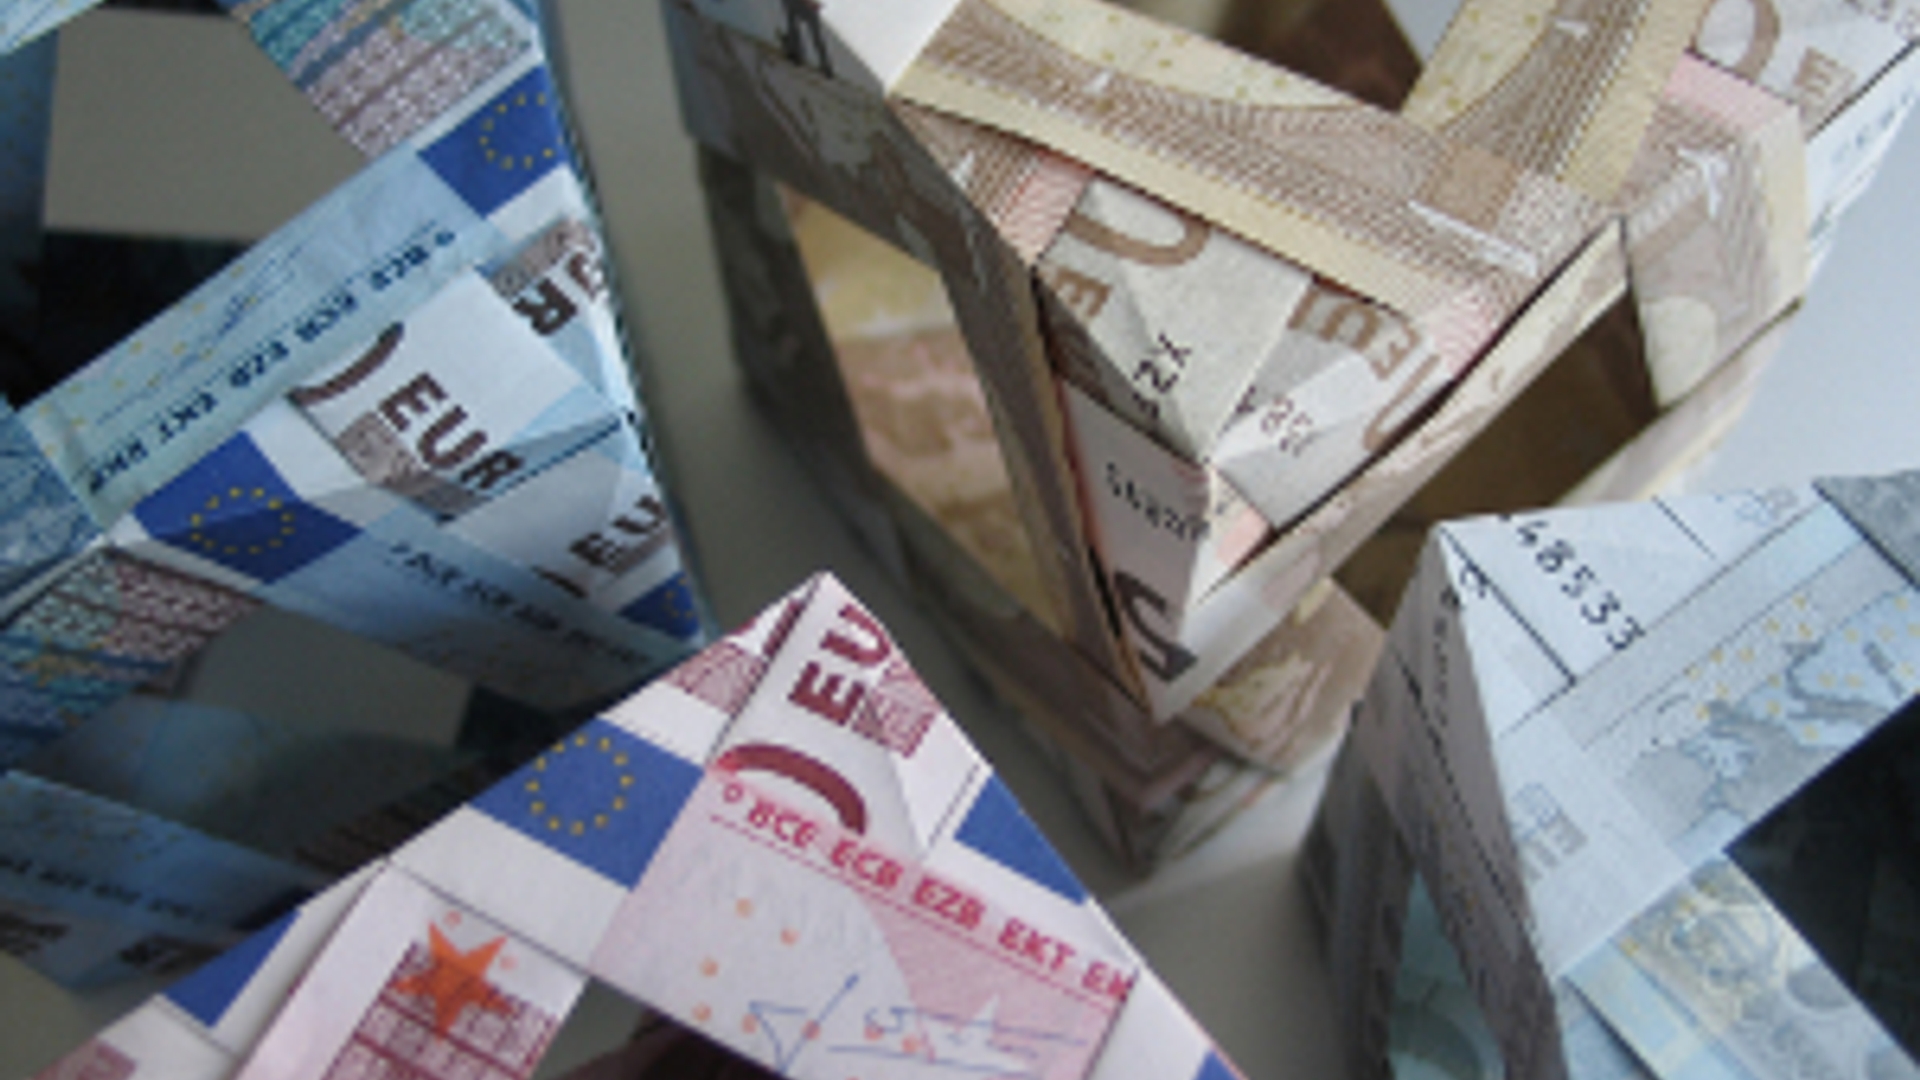 Flickr_geld_origami_AndreasHopf_300_01.jpg